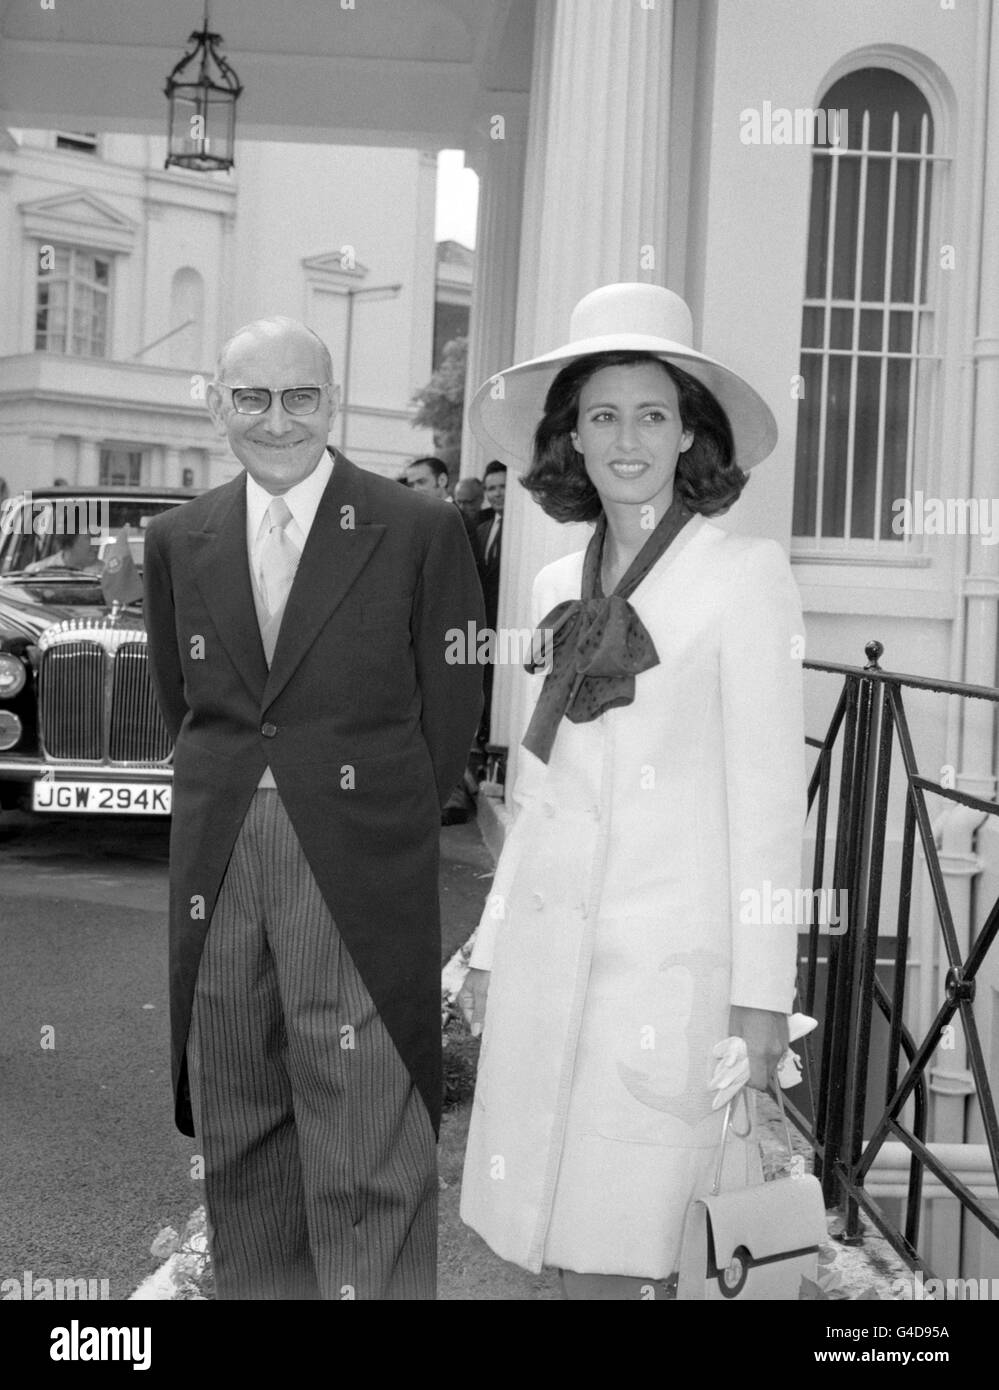 Portuguese Prime Minister Marcello Caetano, and his daughter Ana Maria, leaving the Portuguese Embassy in Belgrave Square, London Stock Photo